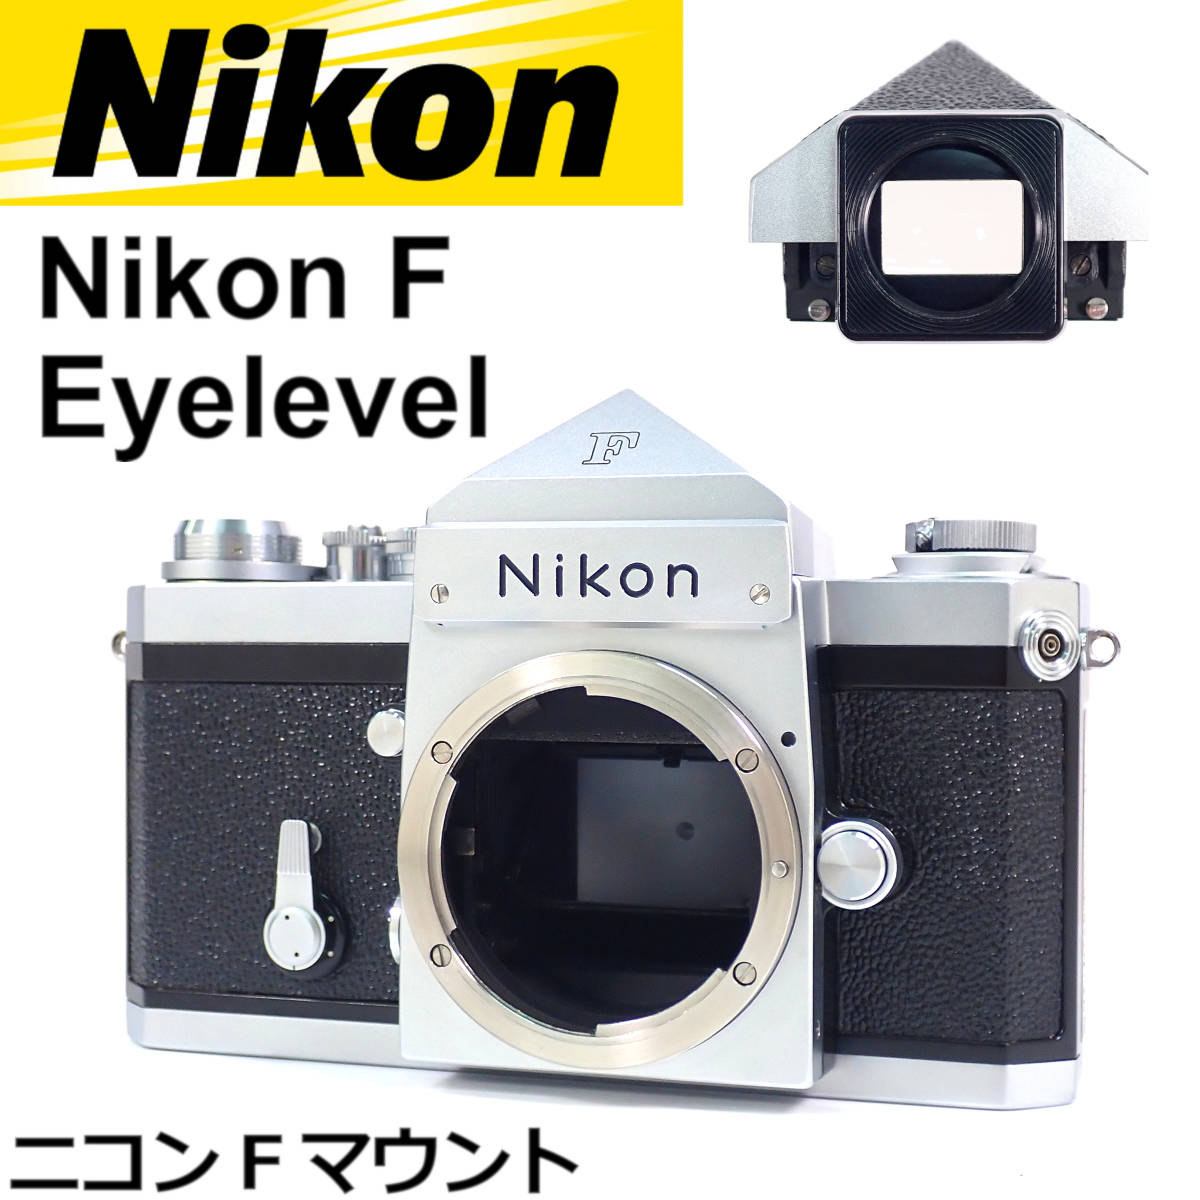 グランドセール Nikon F Eyelevel ボディー シルバー ニコンF アイ